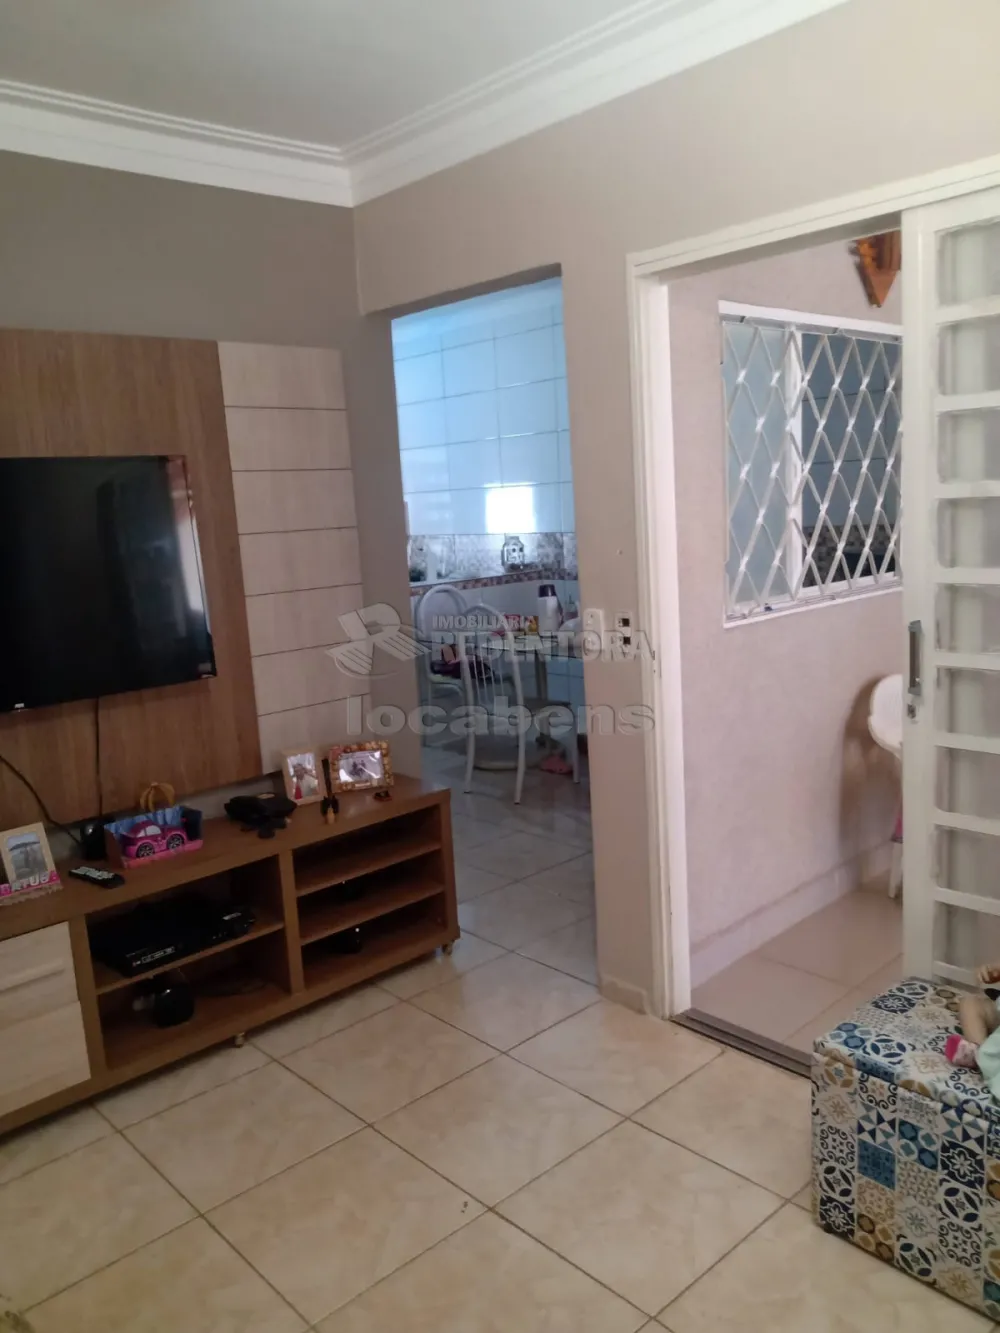 Alugar Casa / Padrão em São José do Rio Preto apenas R$ 1.200,00 - Foto 1